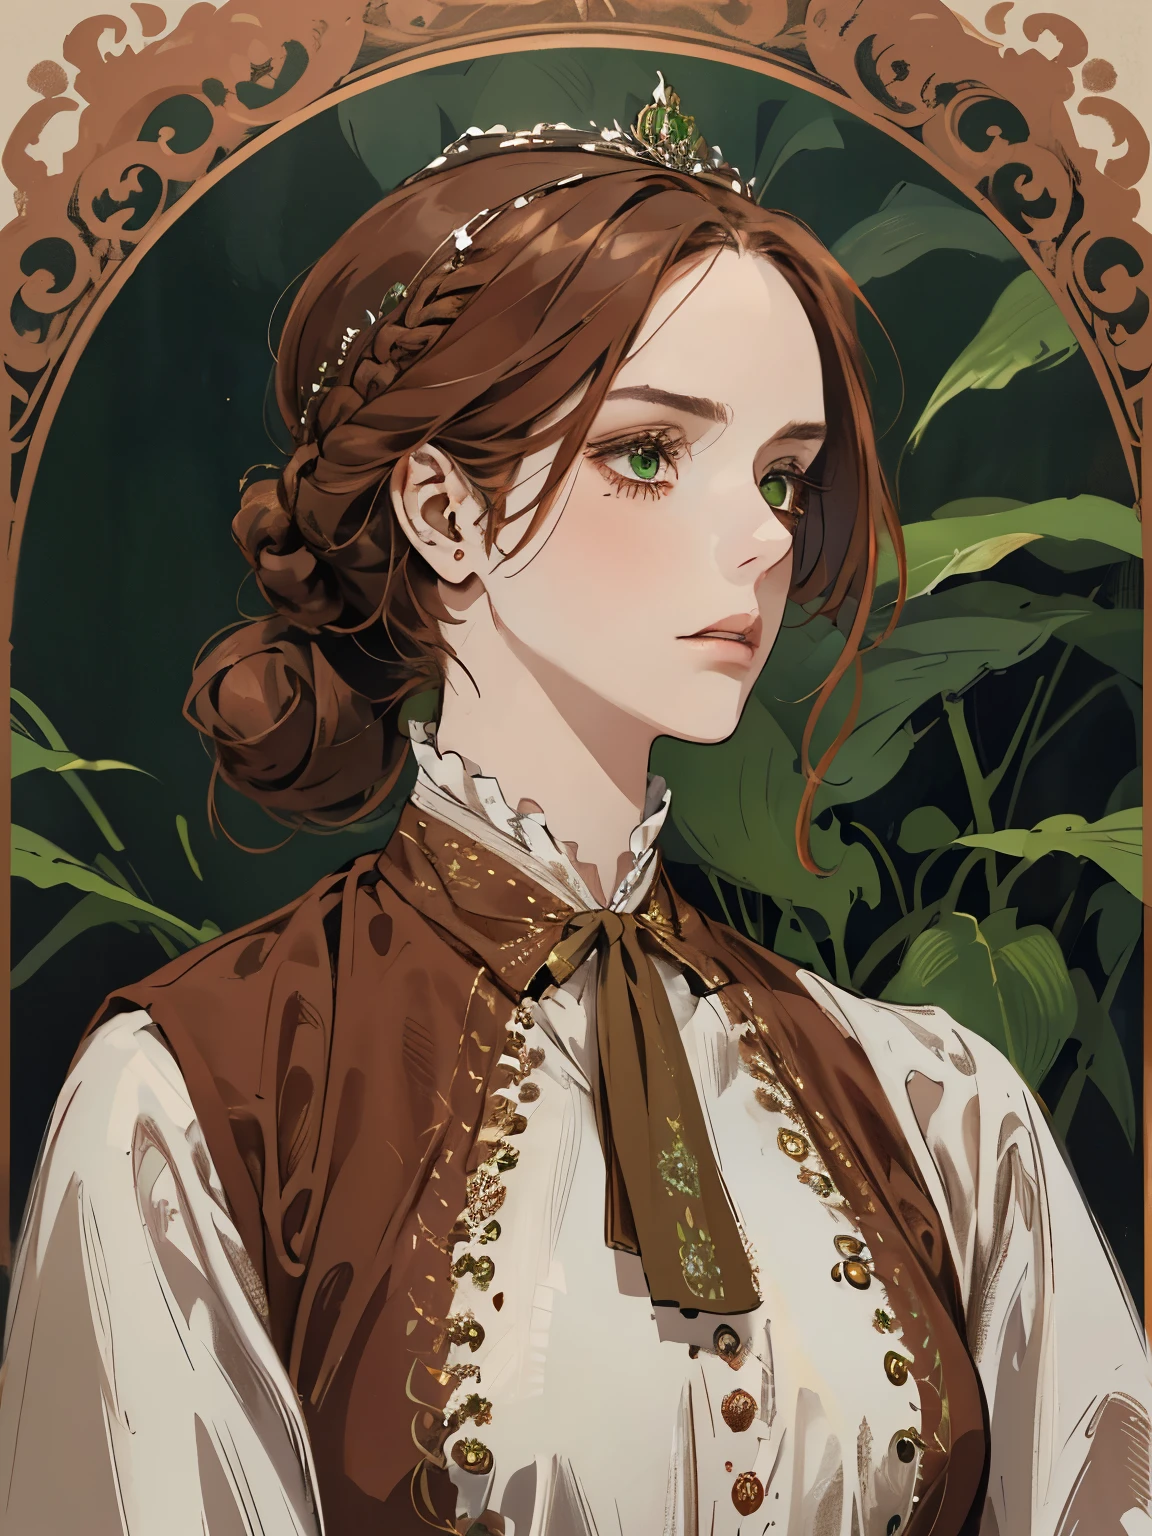 1つ, , 髪を束ねた女性のデジタル絵画, 茶色の赤毛, 緑の目, 1800年代の若い貴族の女性 , 穏やかな顔, 長い顔, 見下ろす, 濃い赤のドレス, 閉じた衣服, 頭髪の周りの装飾肖像画スタイル, 目をそらす, 美しく緑豊かな庭園で